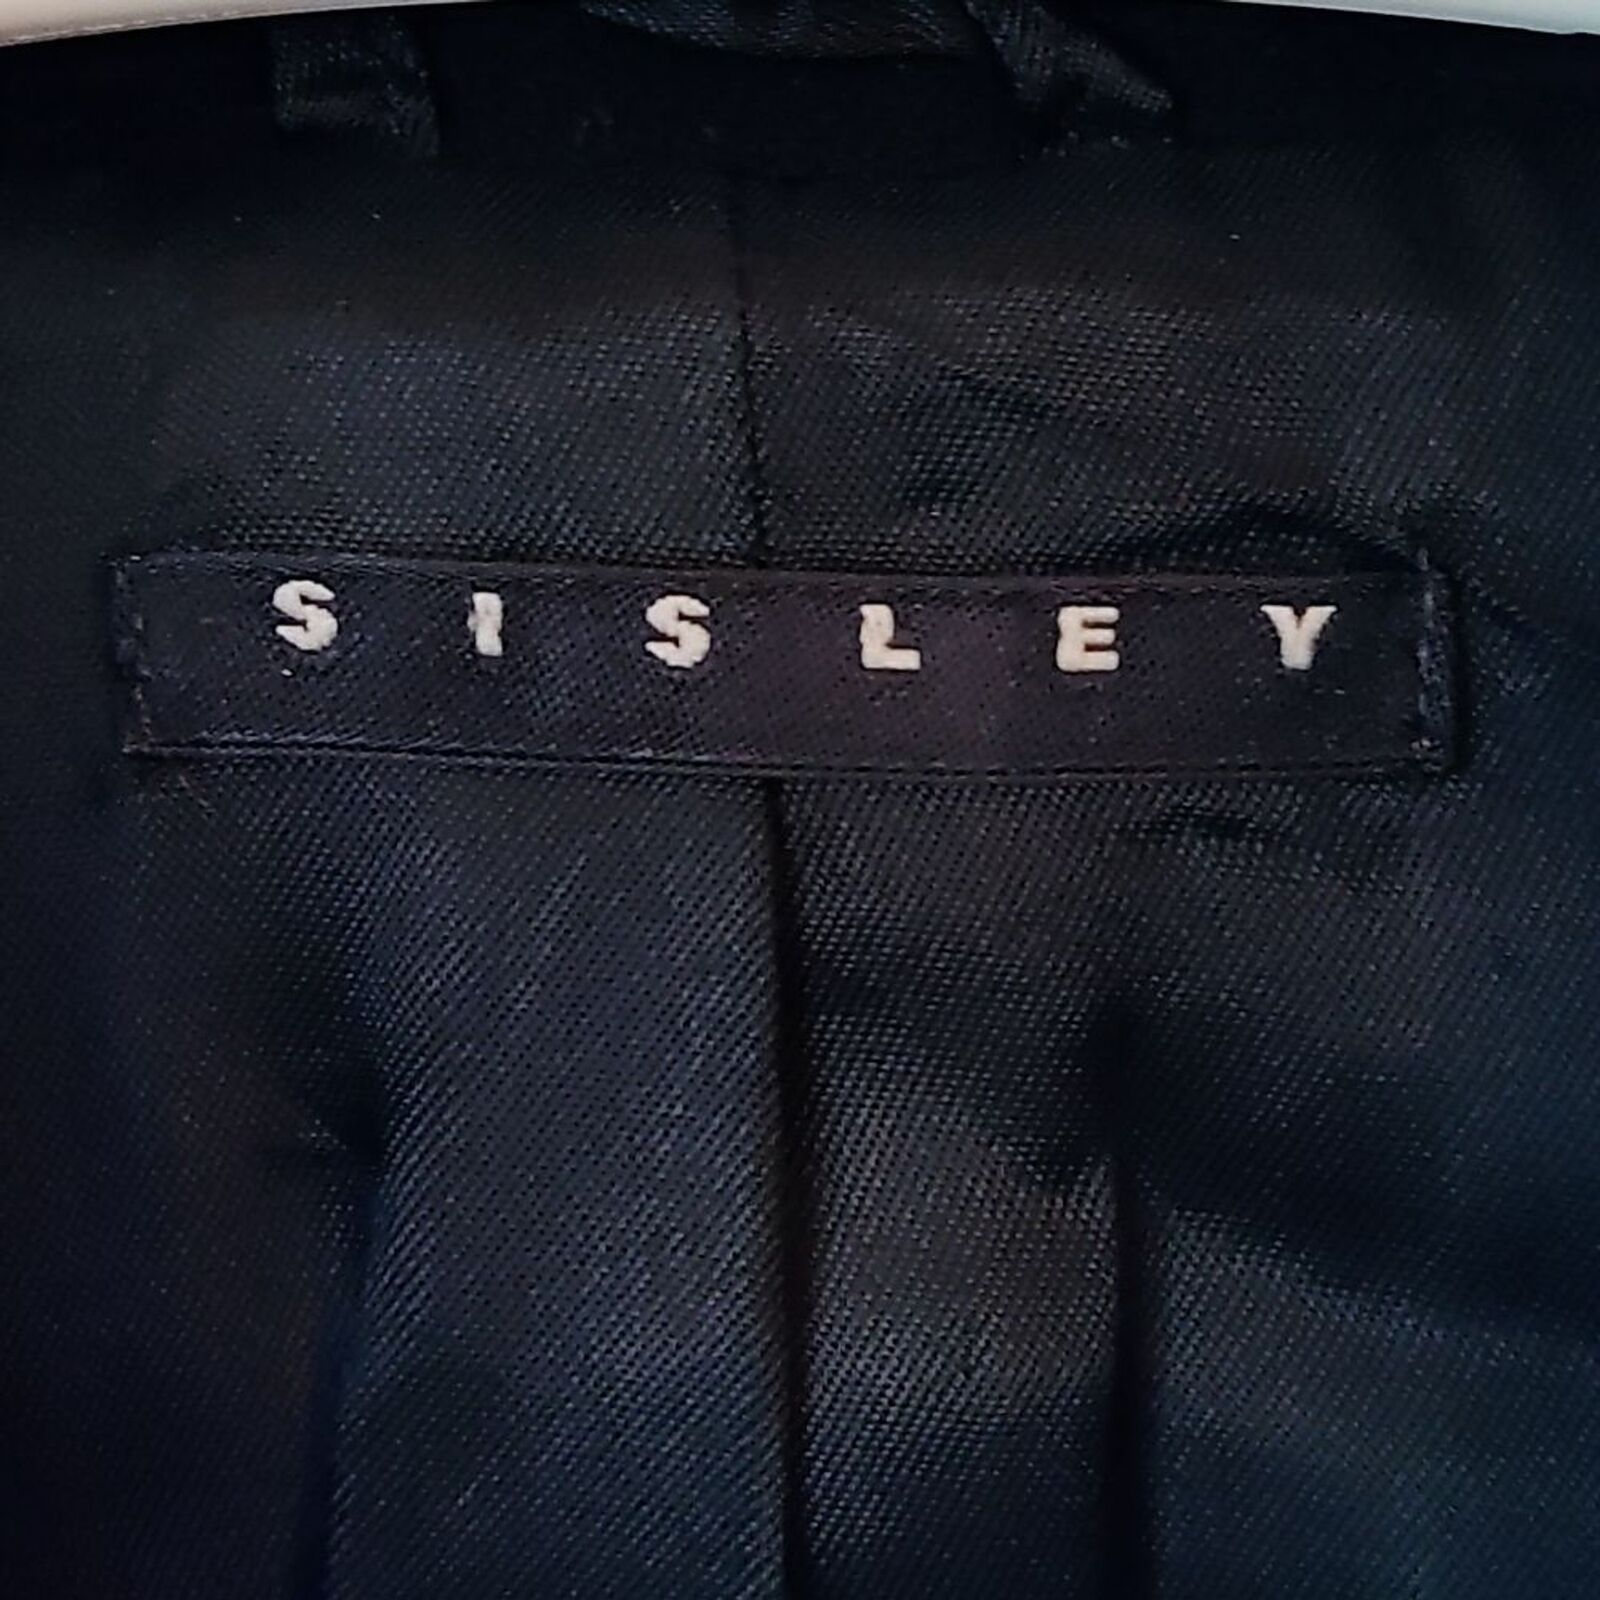 Sisley Black Wool Blend Coat - image 5